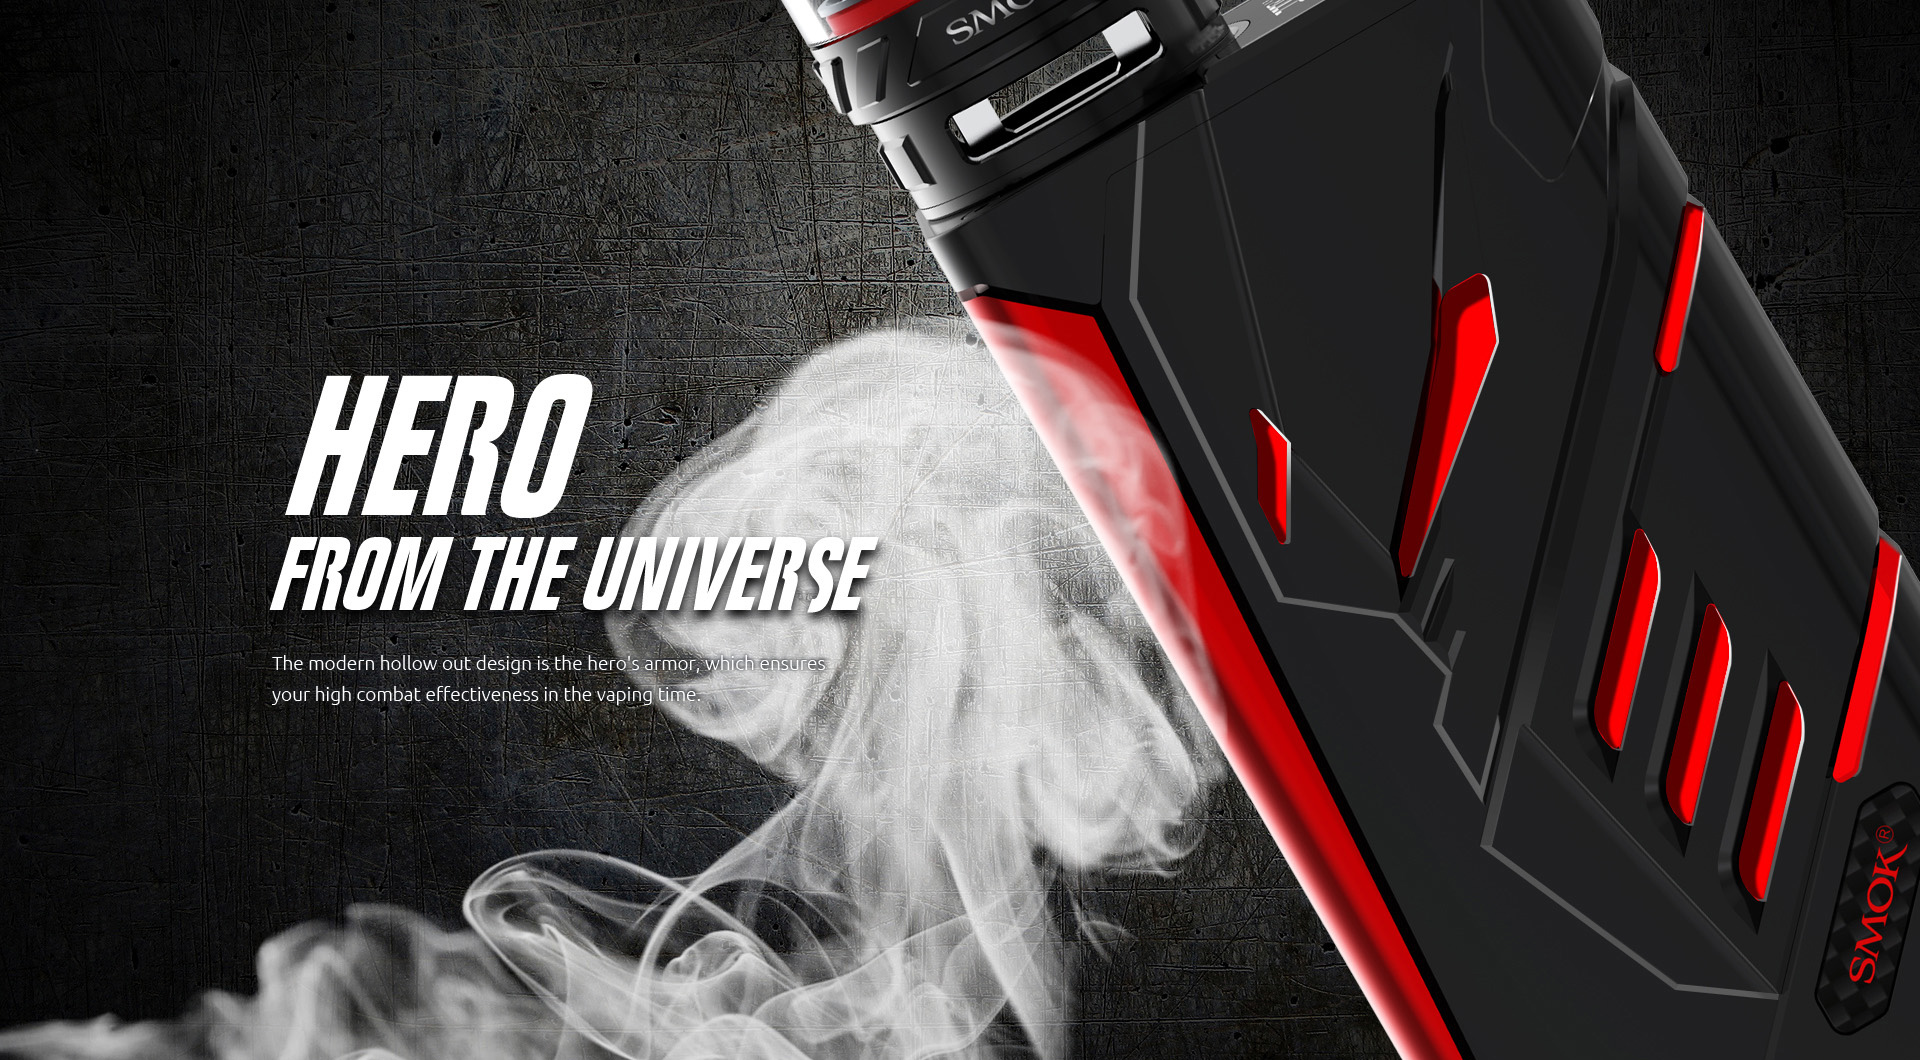 Hero from the Universe - SMOK T-Priv kit 